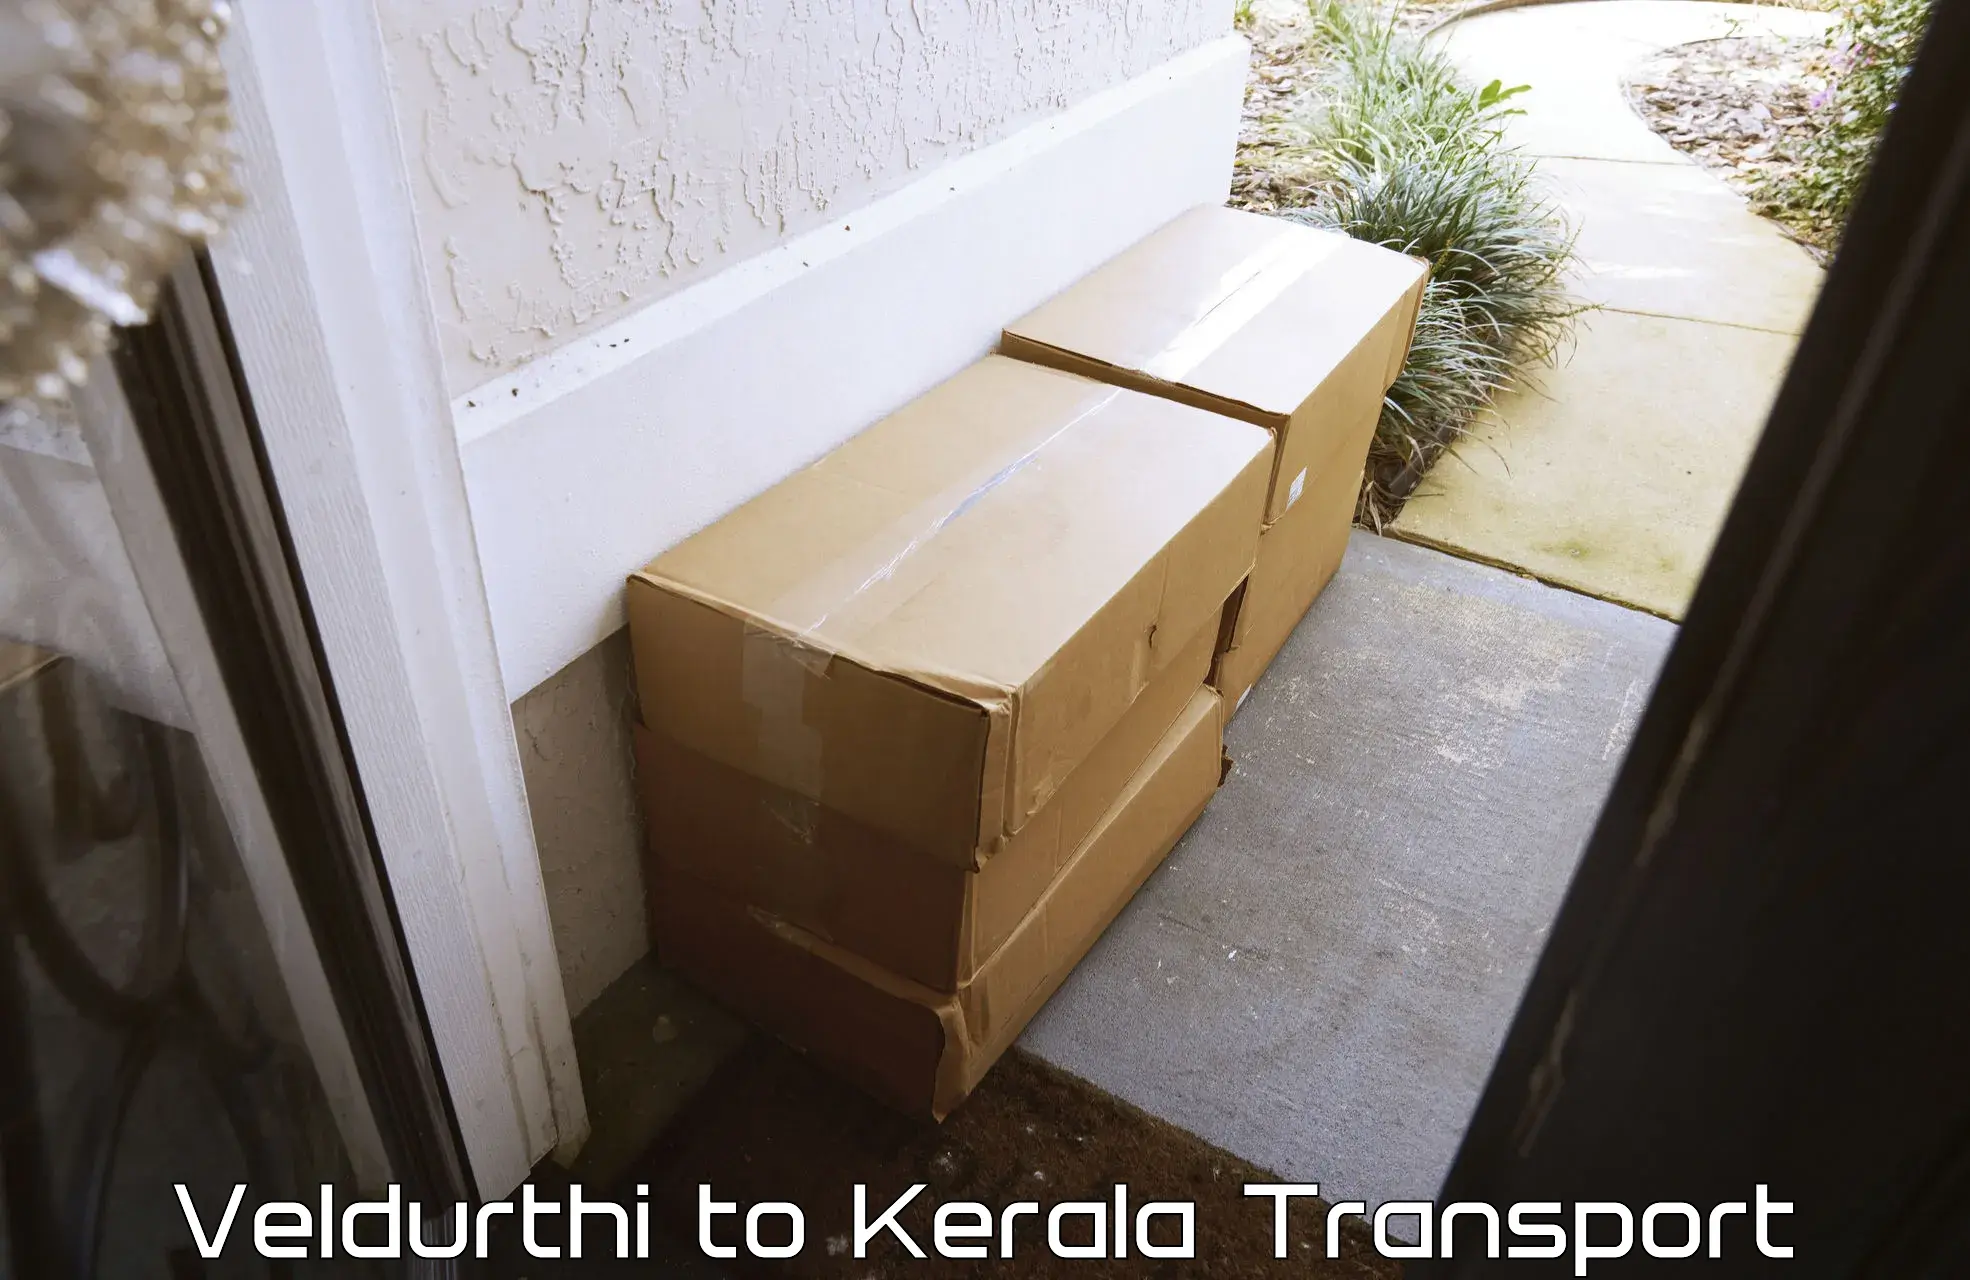 Road transport services Veldurthi to Kochi